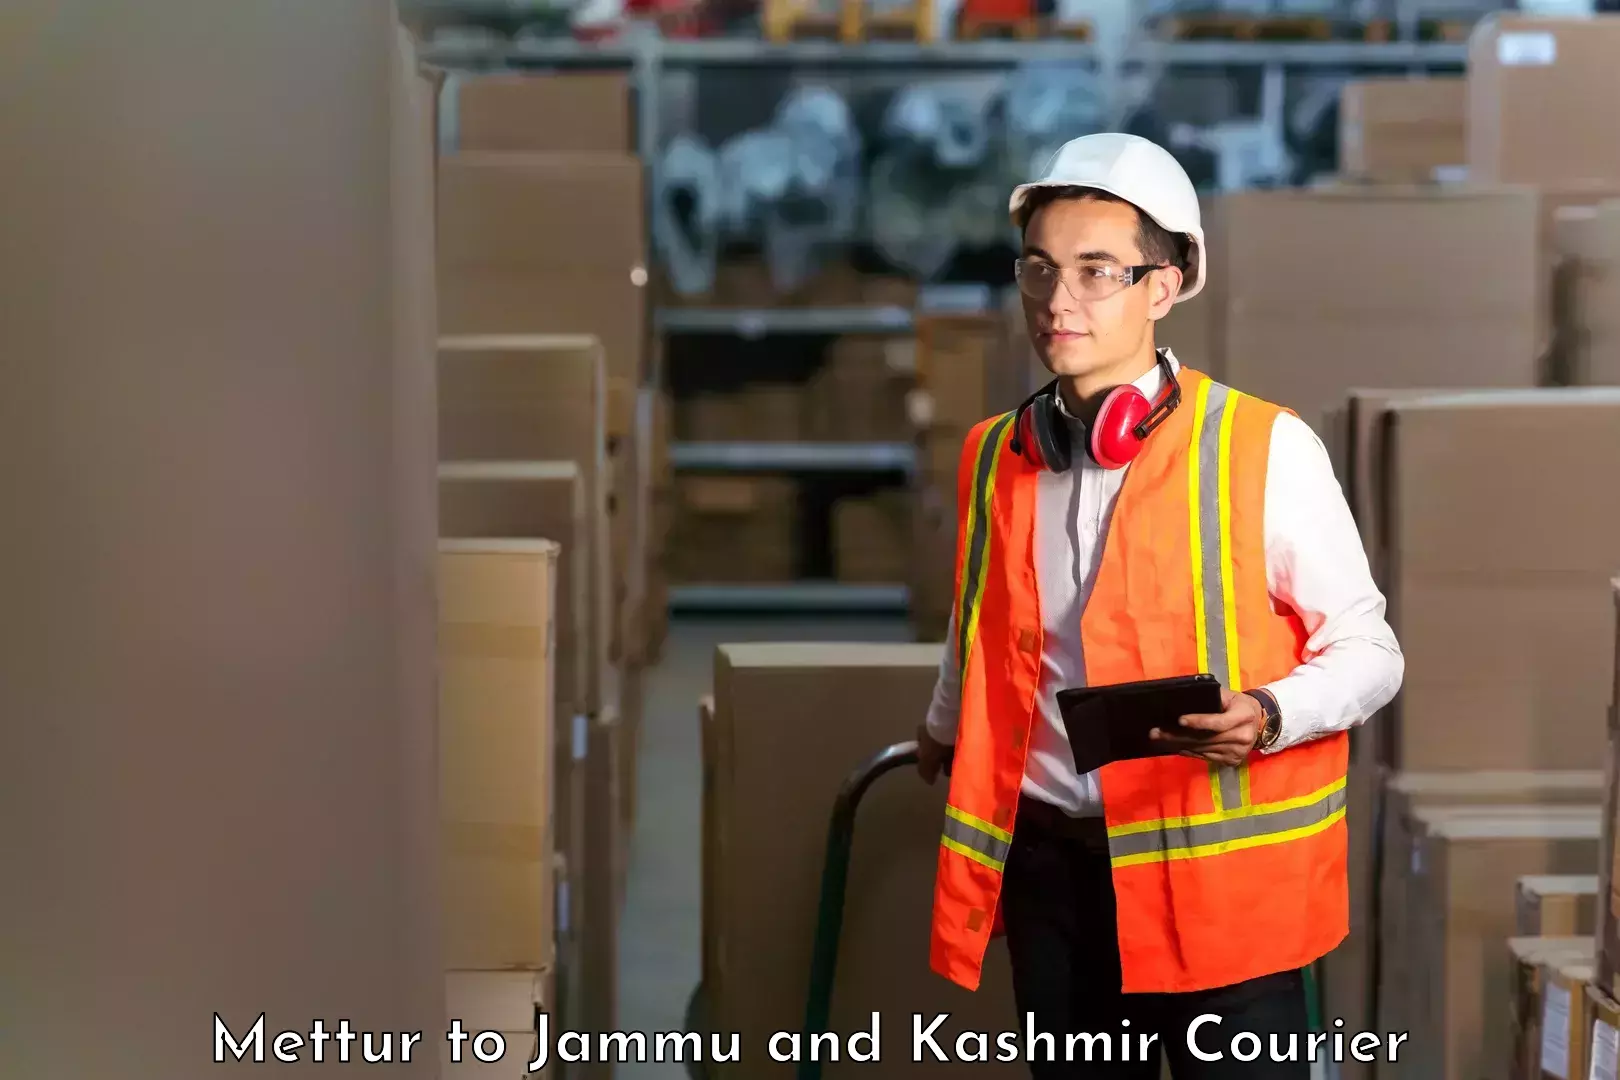 Global logistics network Mettur to Jammu and Kashmir